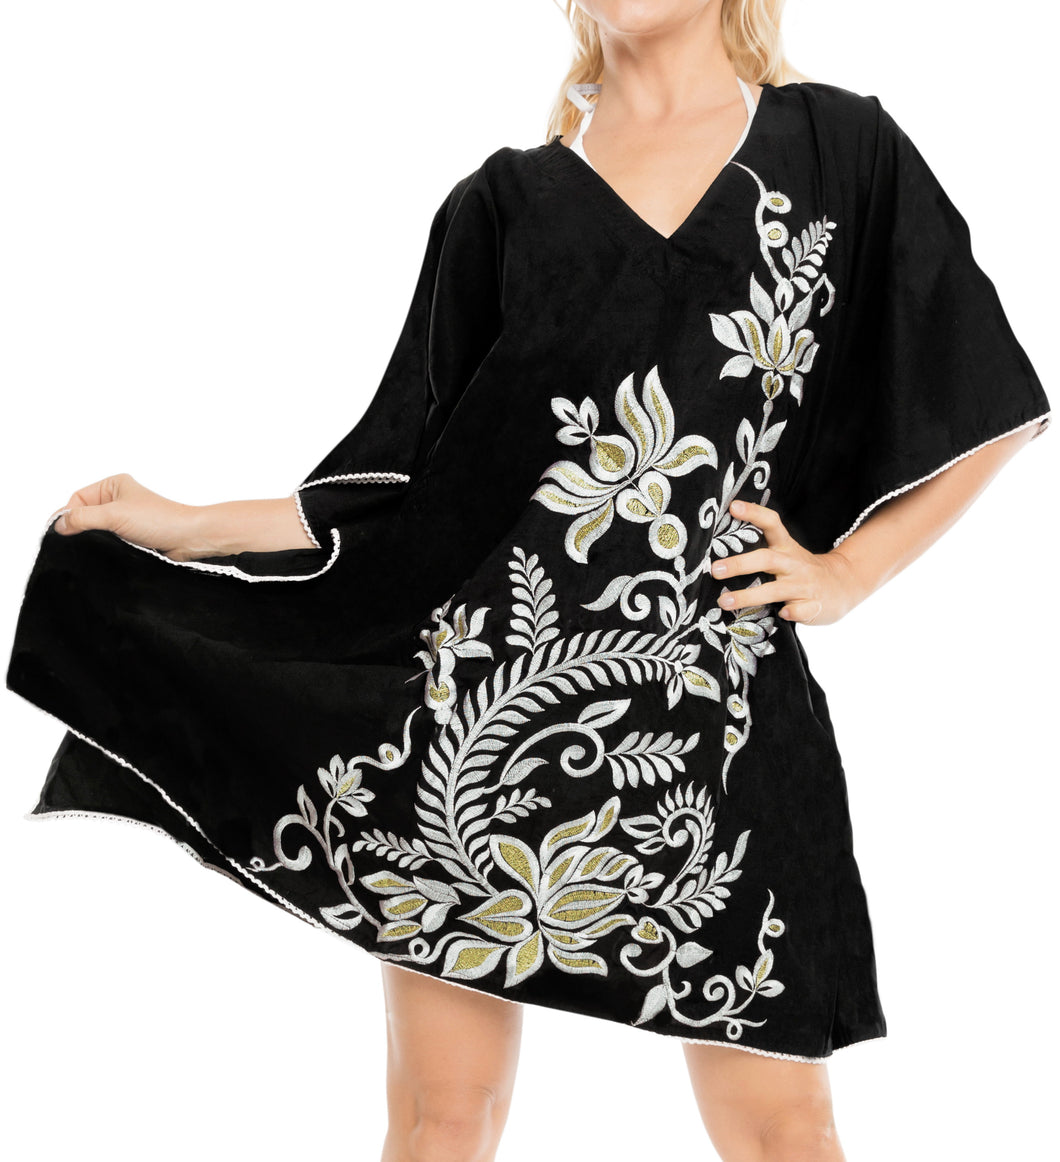 Women's Dress Sundress Beachwear Lounger  Evening Casual TOP Cover ups  Black